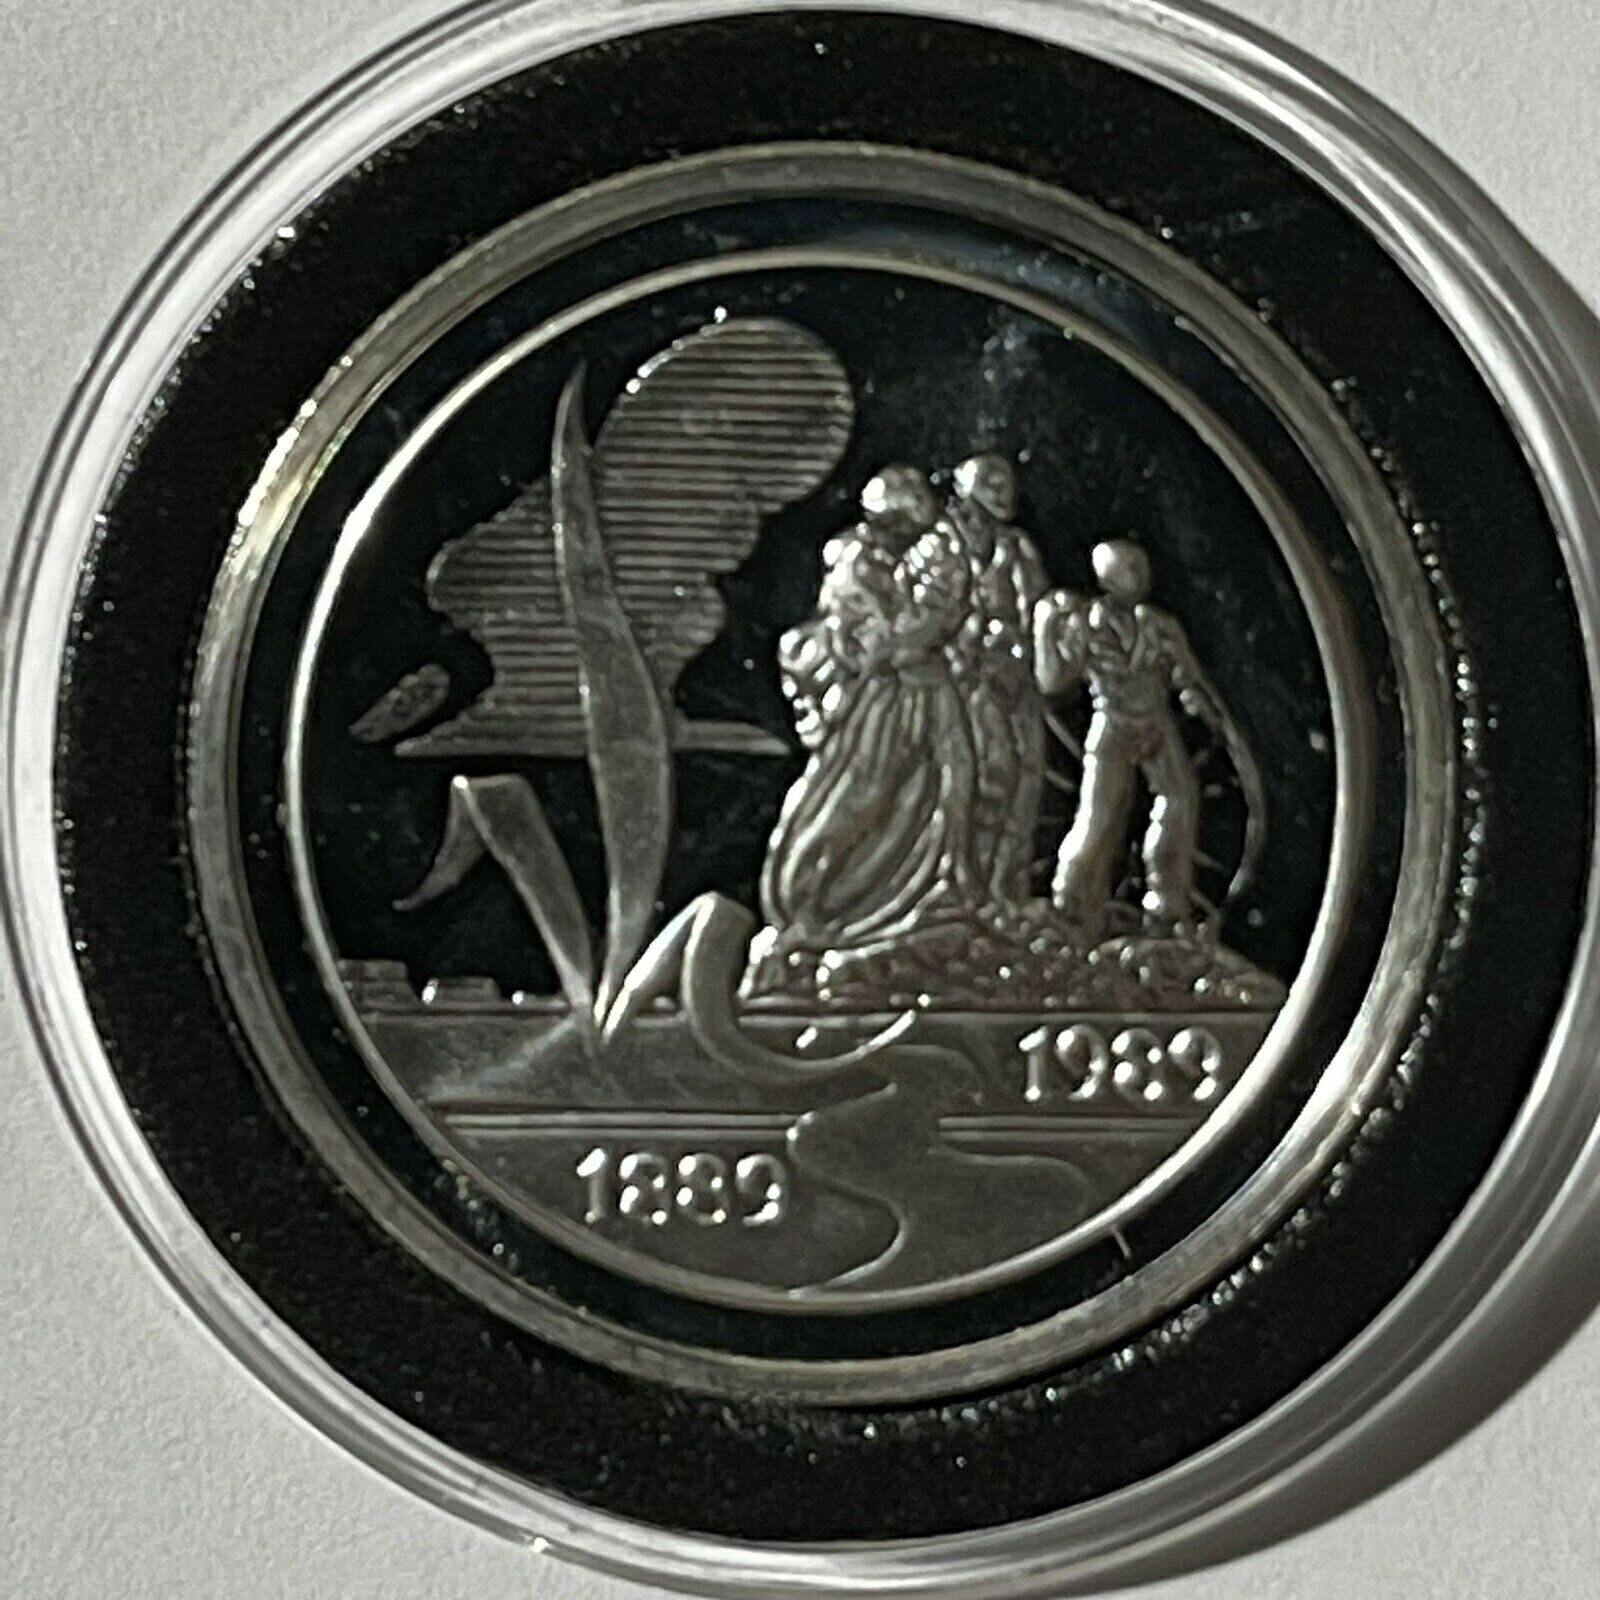 【極美品/品質保証書付】 アンティークコイン コイン 金貨 銀貨 [送料無料] 1989 North Dakota Centennial Proof Coin 1 Troy Oz .999 Fine Silver Round Medal